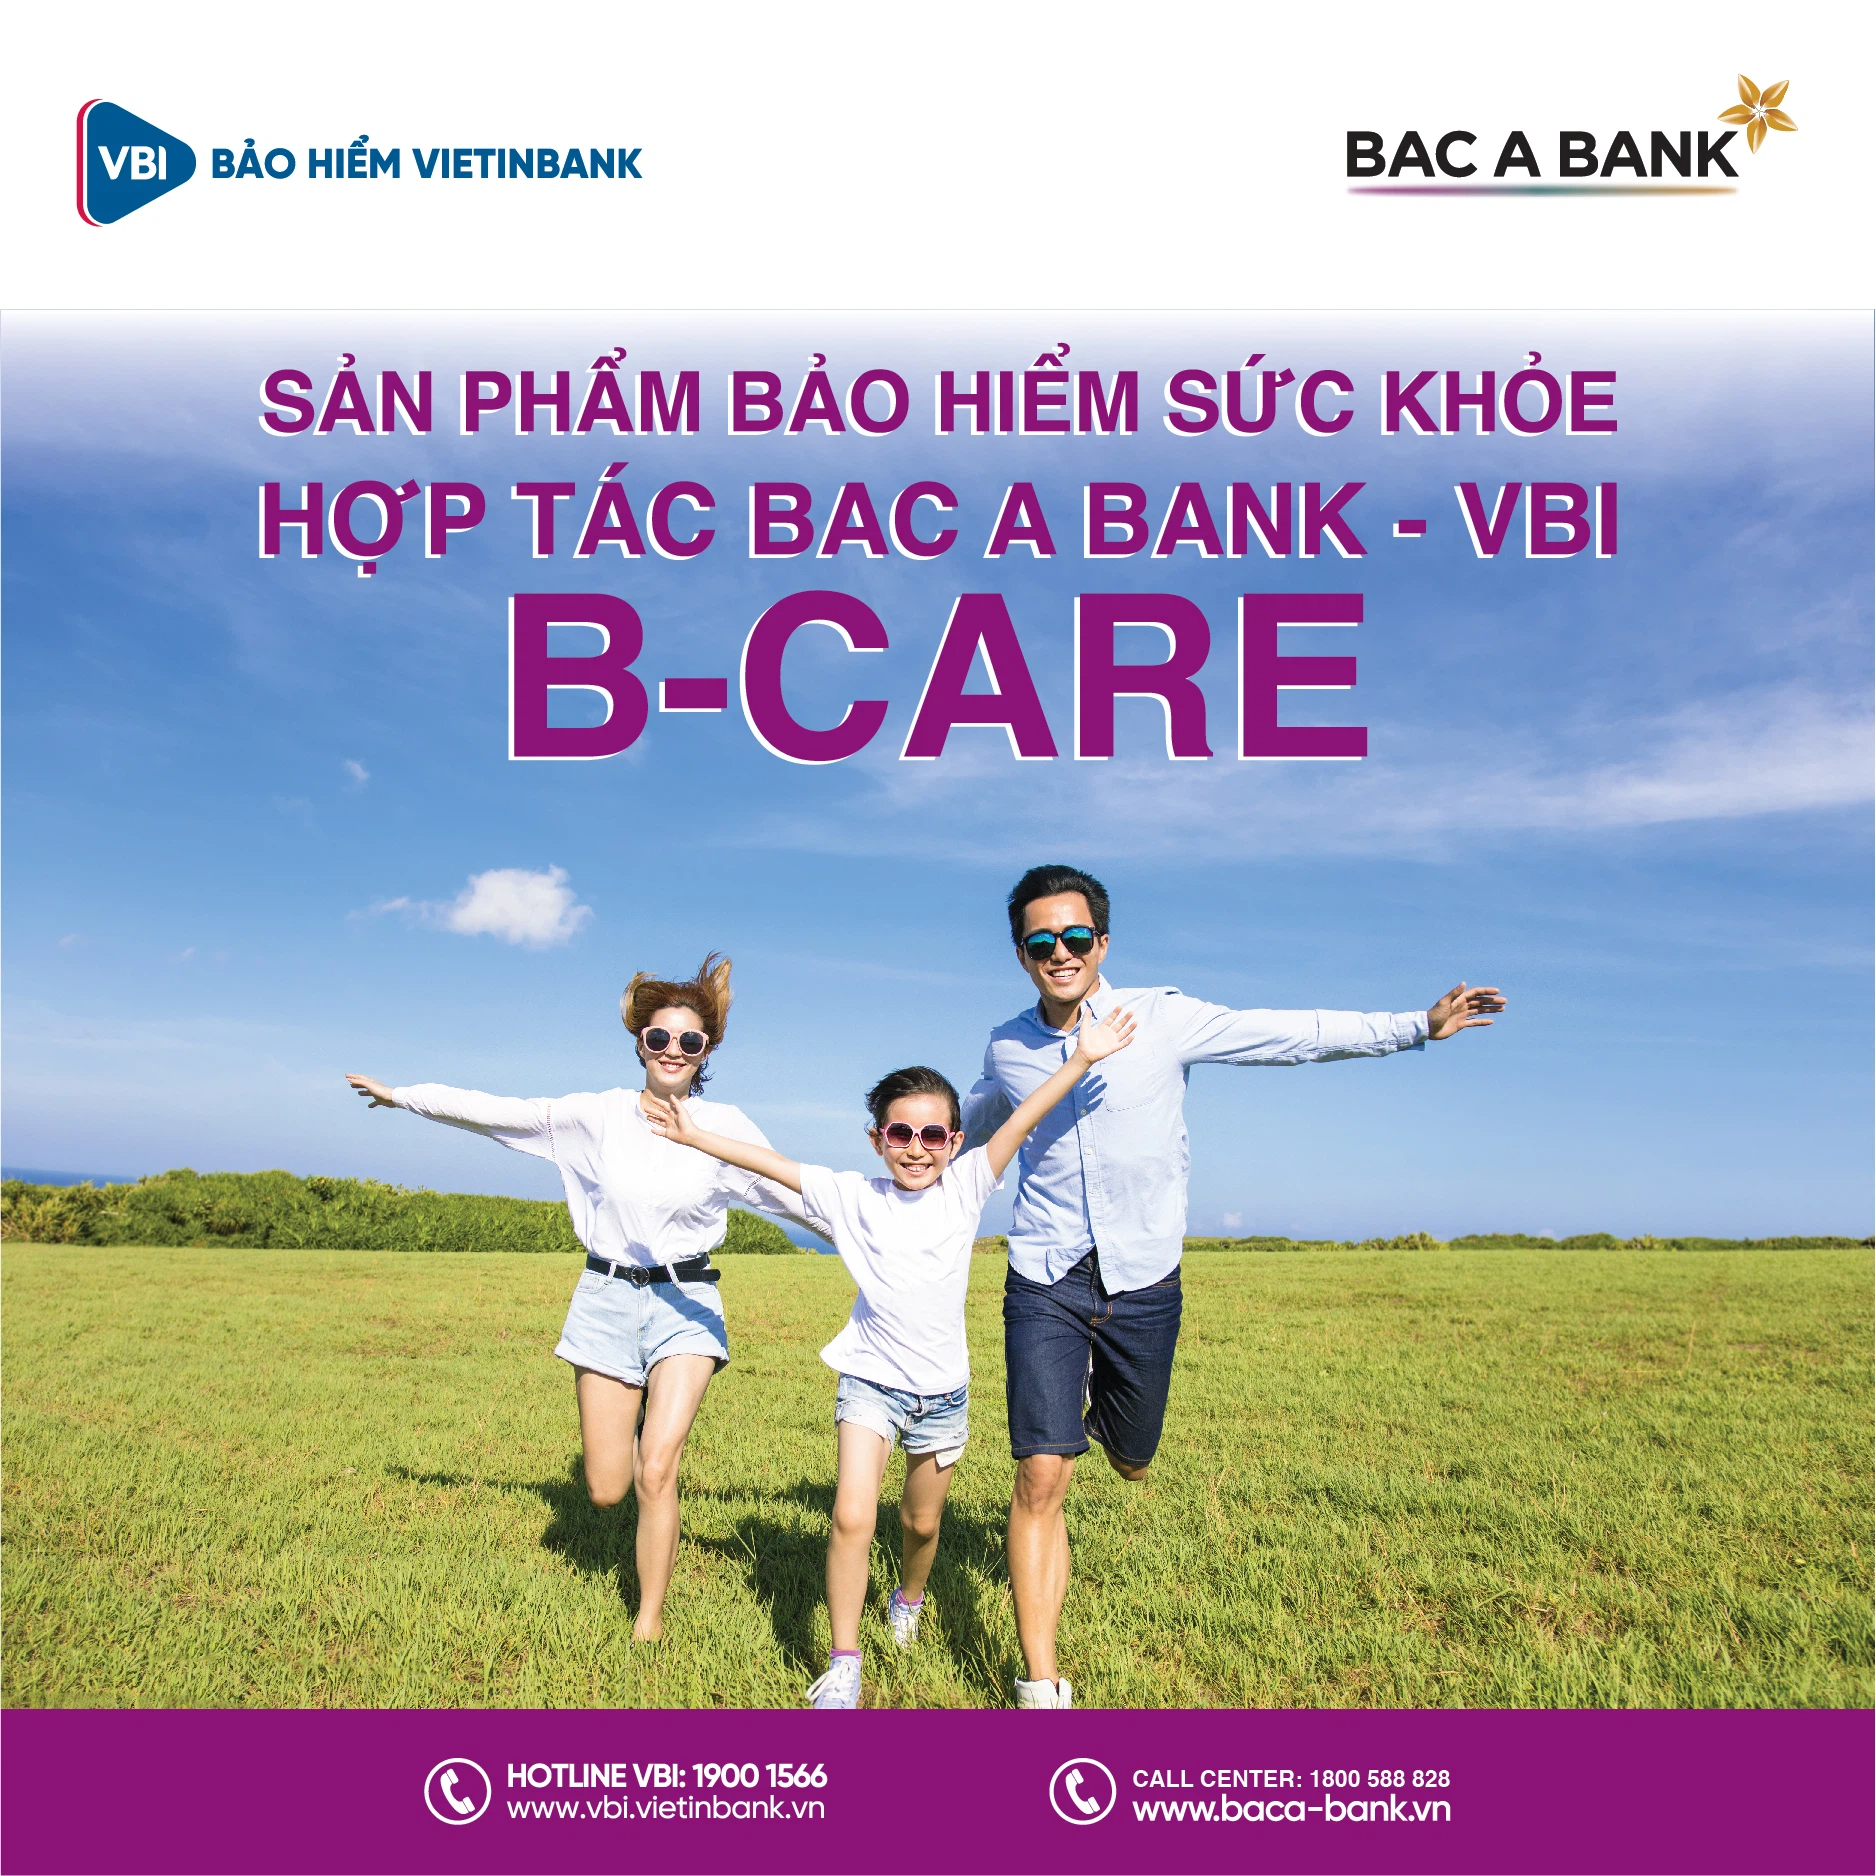 Bac A Bank và VBI chính thức hợp tác phân phối bảo hiểm phi nhân thọ - Ảnh 1.